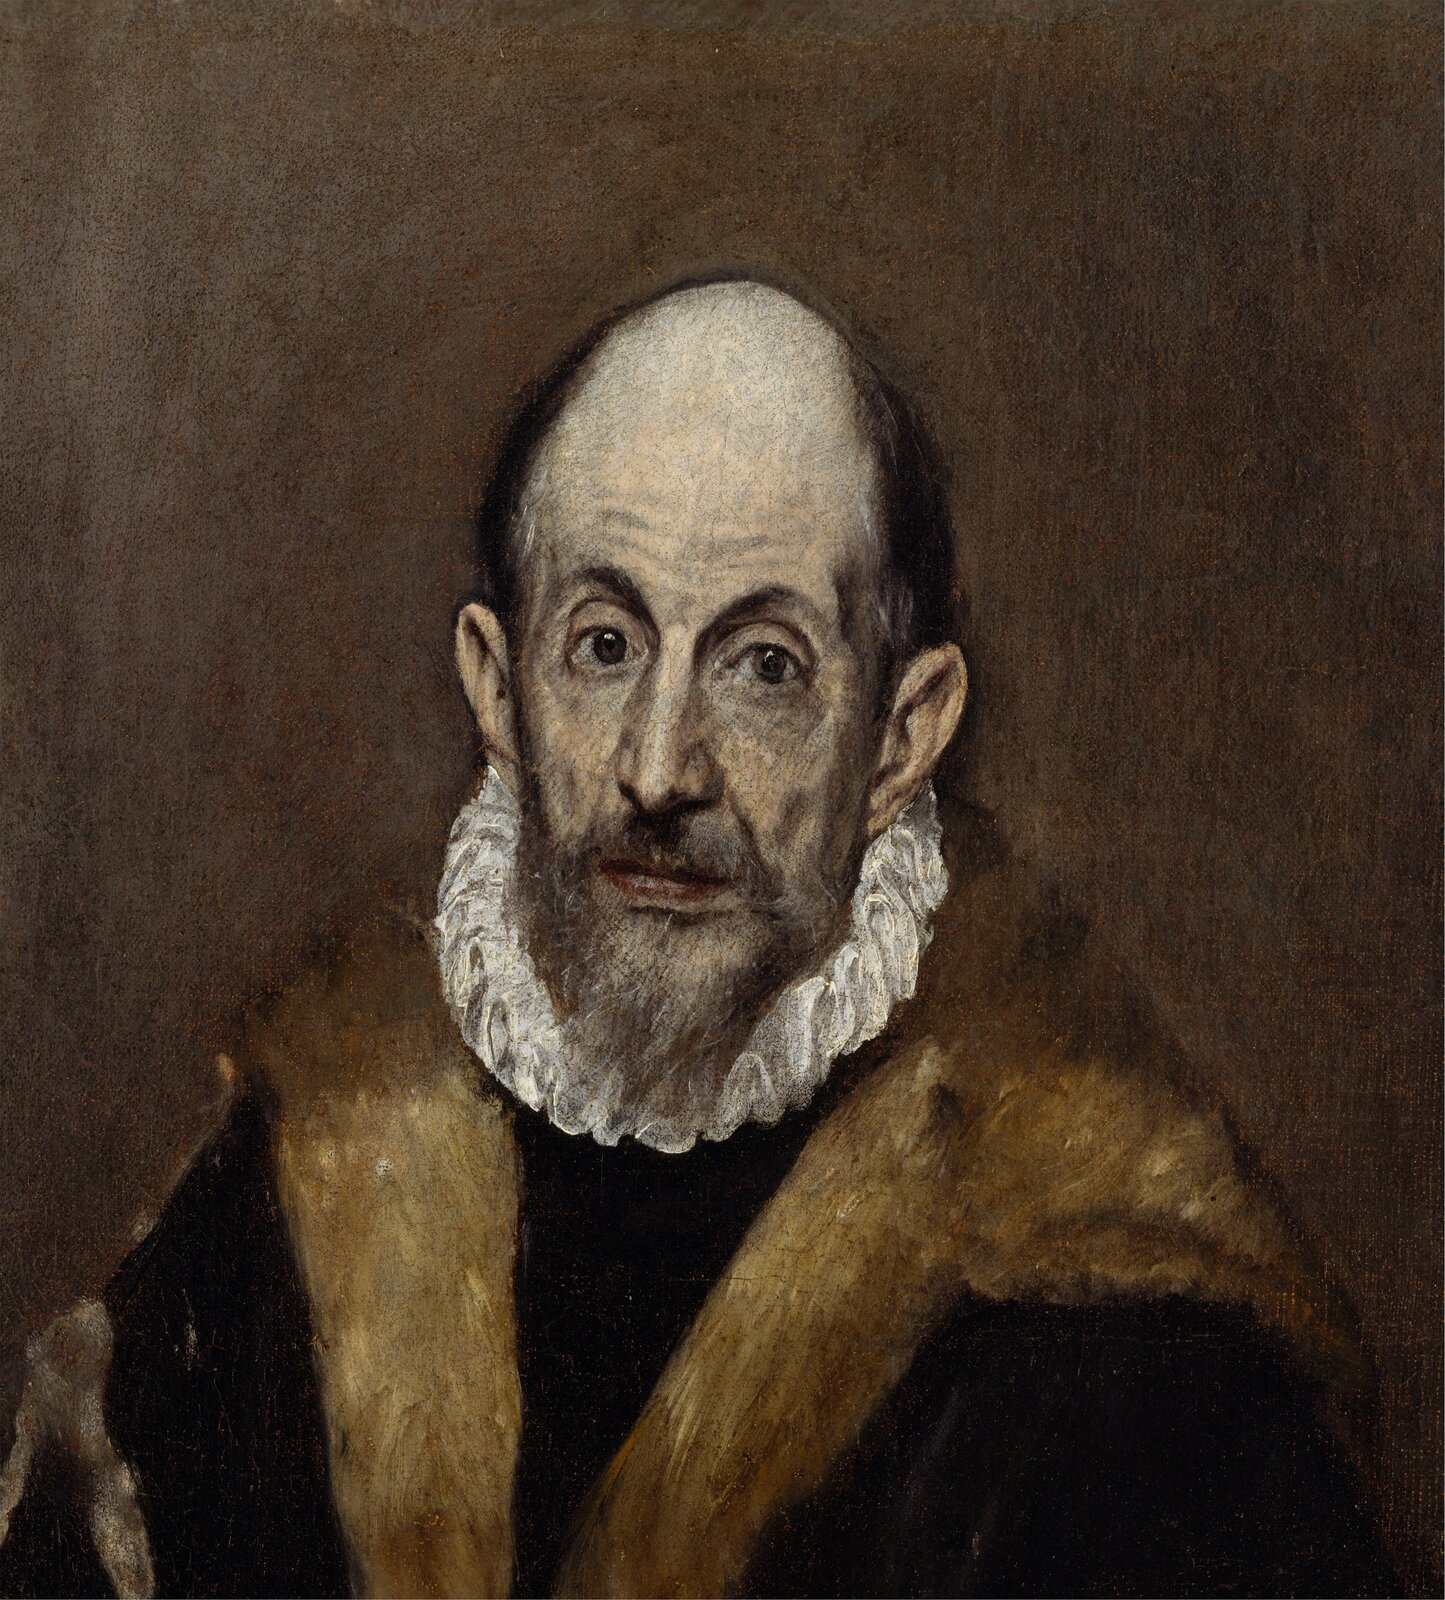 Domniemany autoportret El Greca Domniemany autoportret El Greca Źródło: El Greco, 1595–1600, olej na płótnie, Metropolitan Museum of Art, domena publiczna.